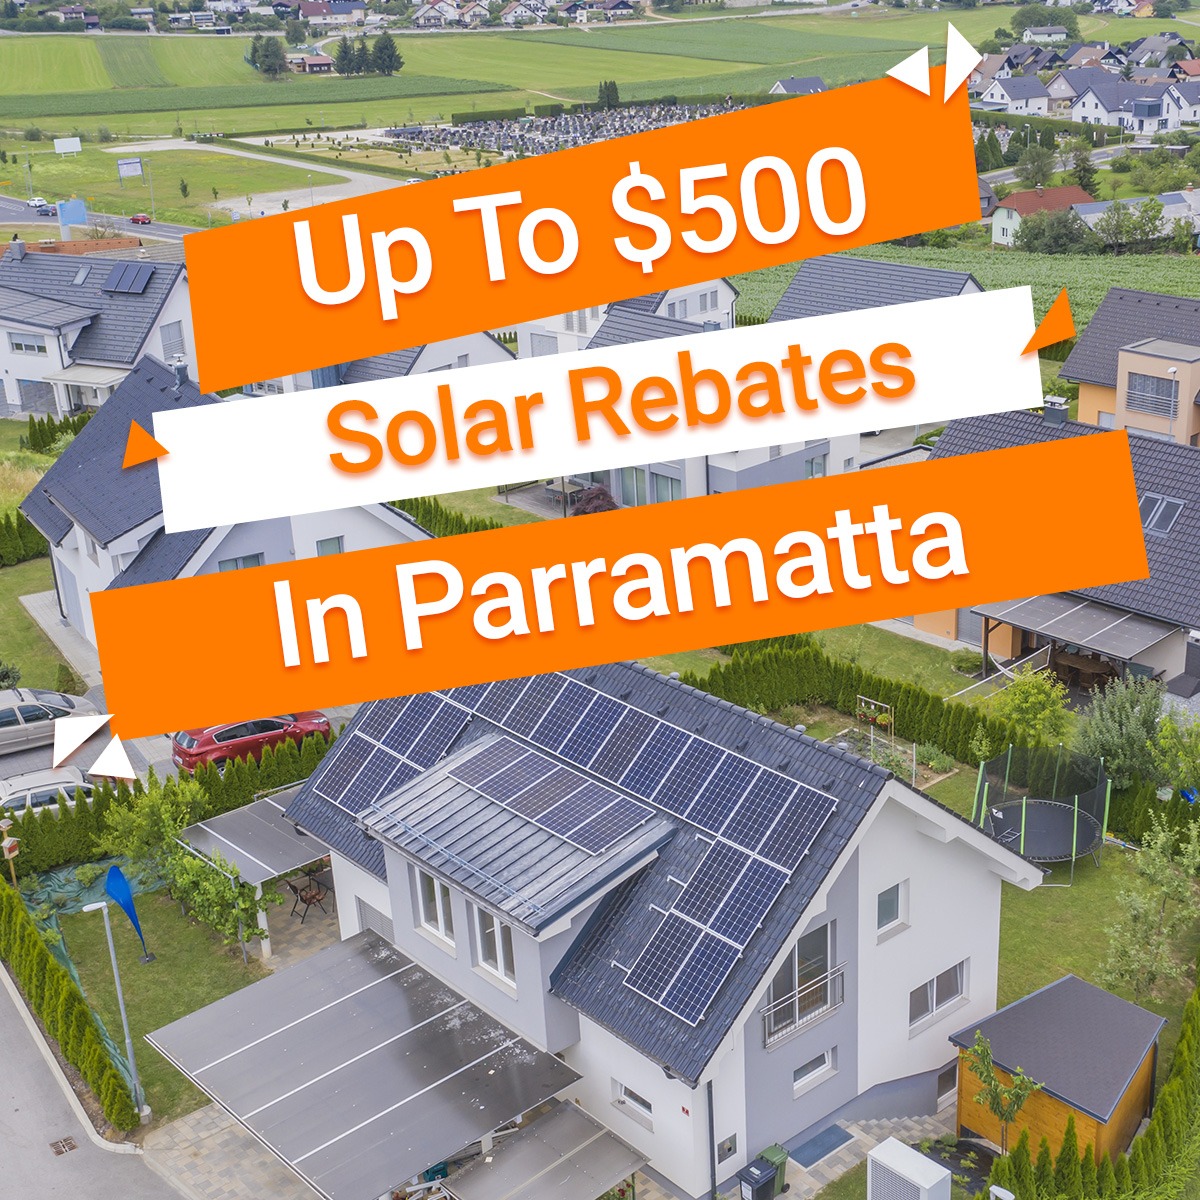 Parramatta Solar Rebates